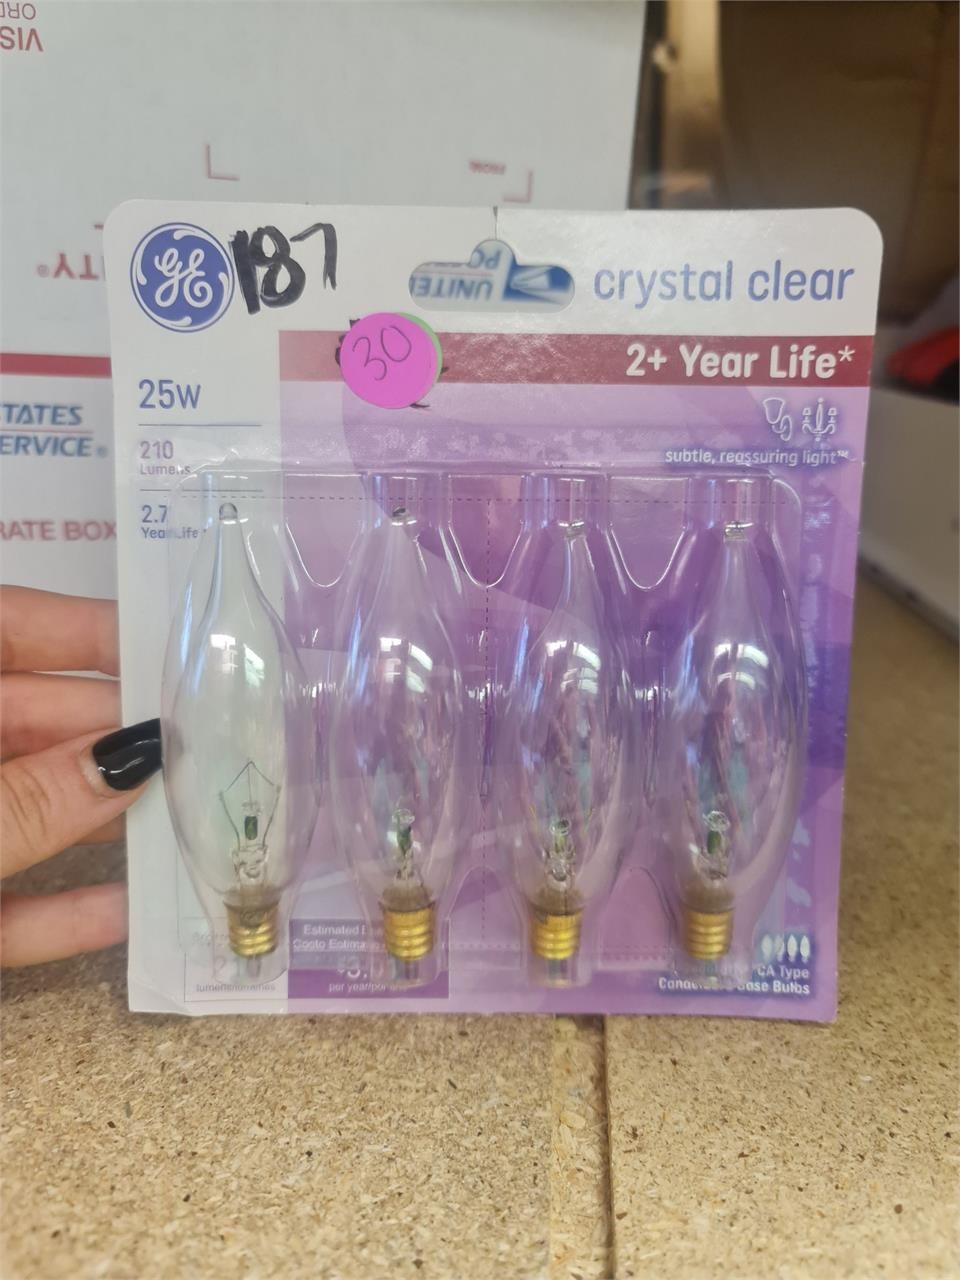 Crystal clear light bulbs